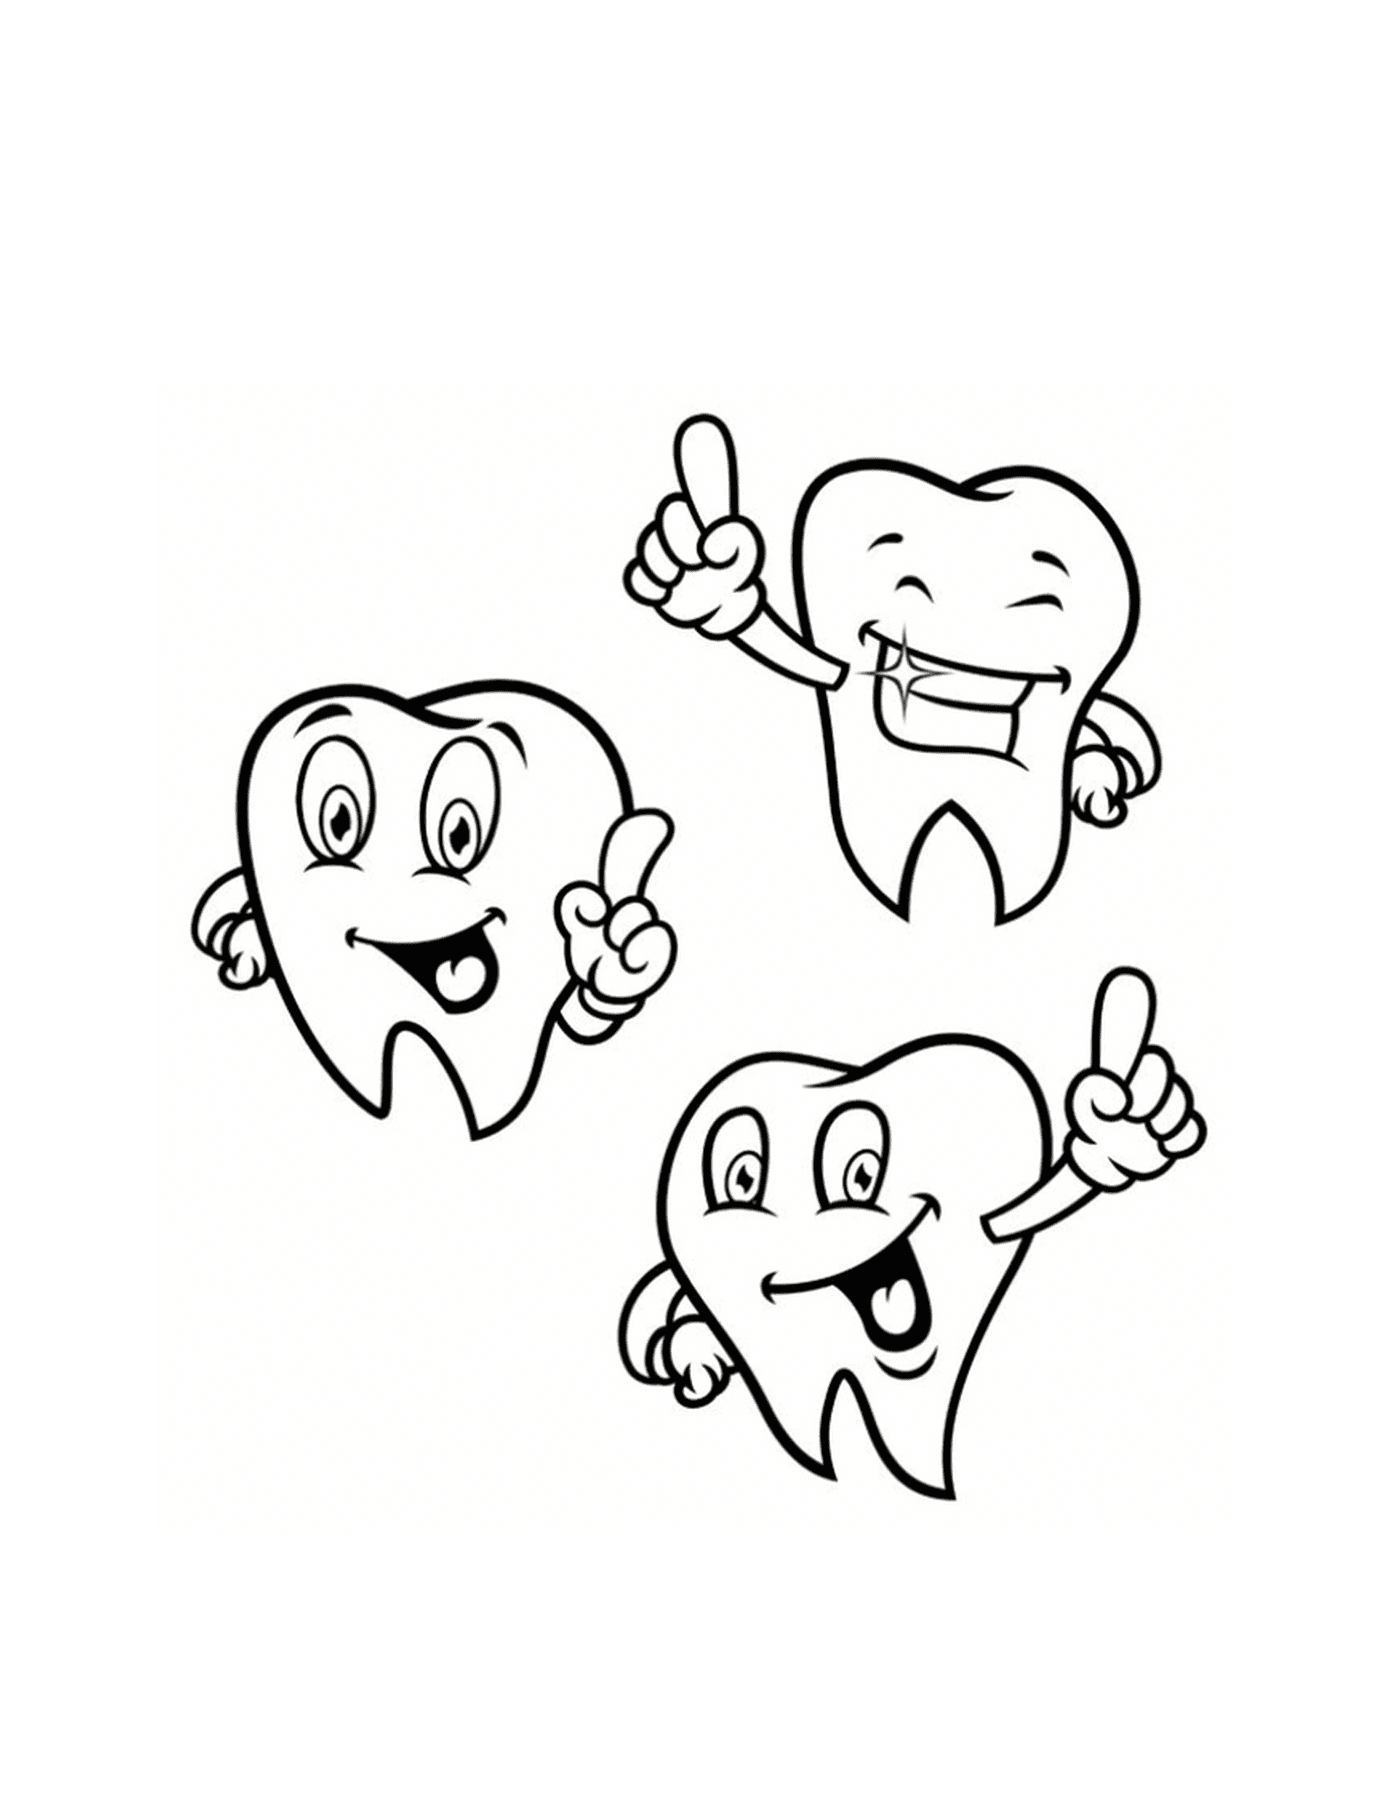  Tre bei denti con un pollice alzato 